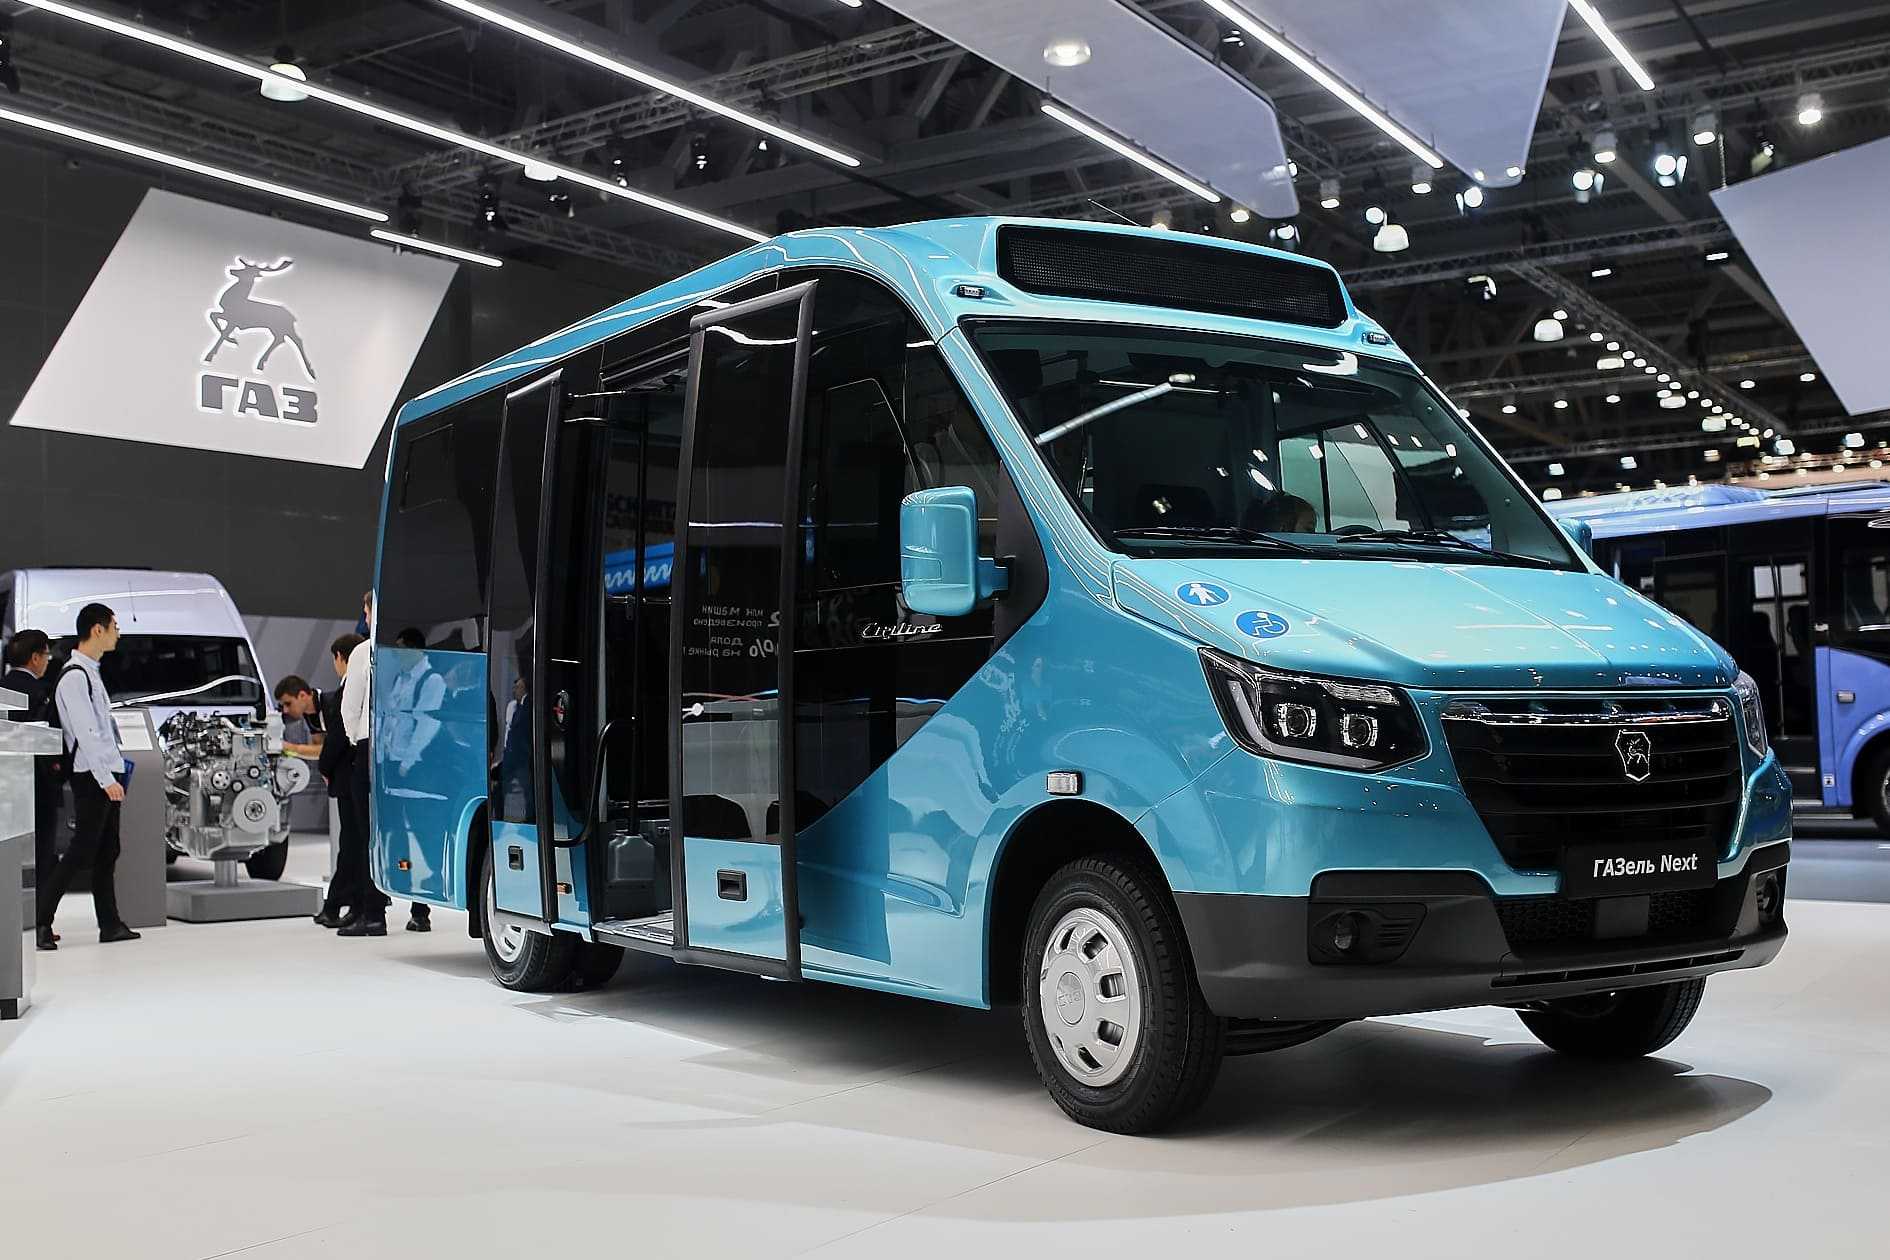 Микроавтобус газель next: цена, технические характеристики, модельный ряд на 8, 18, 20 и 22 места